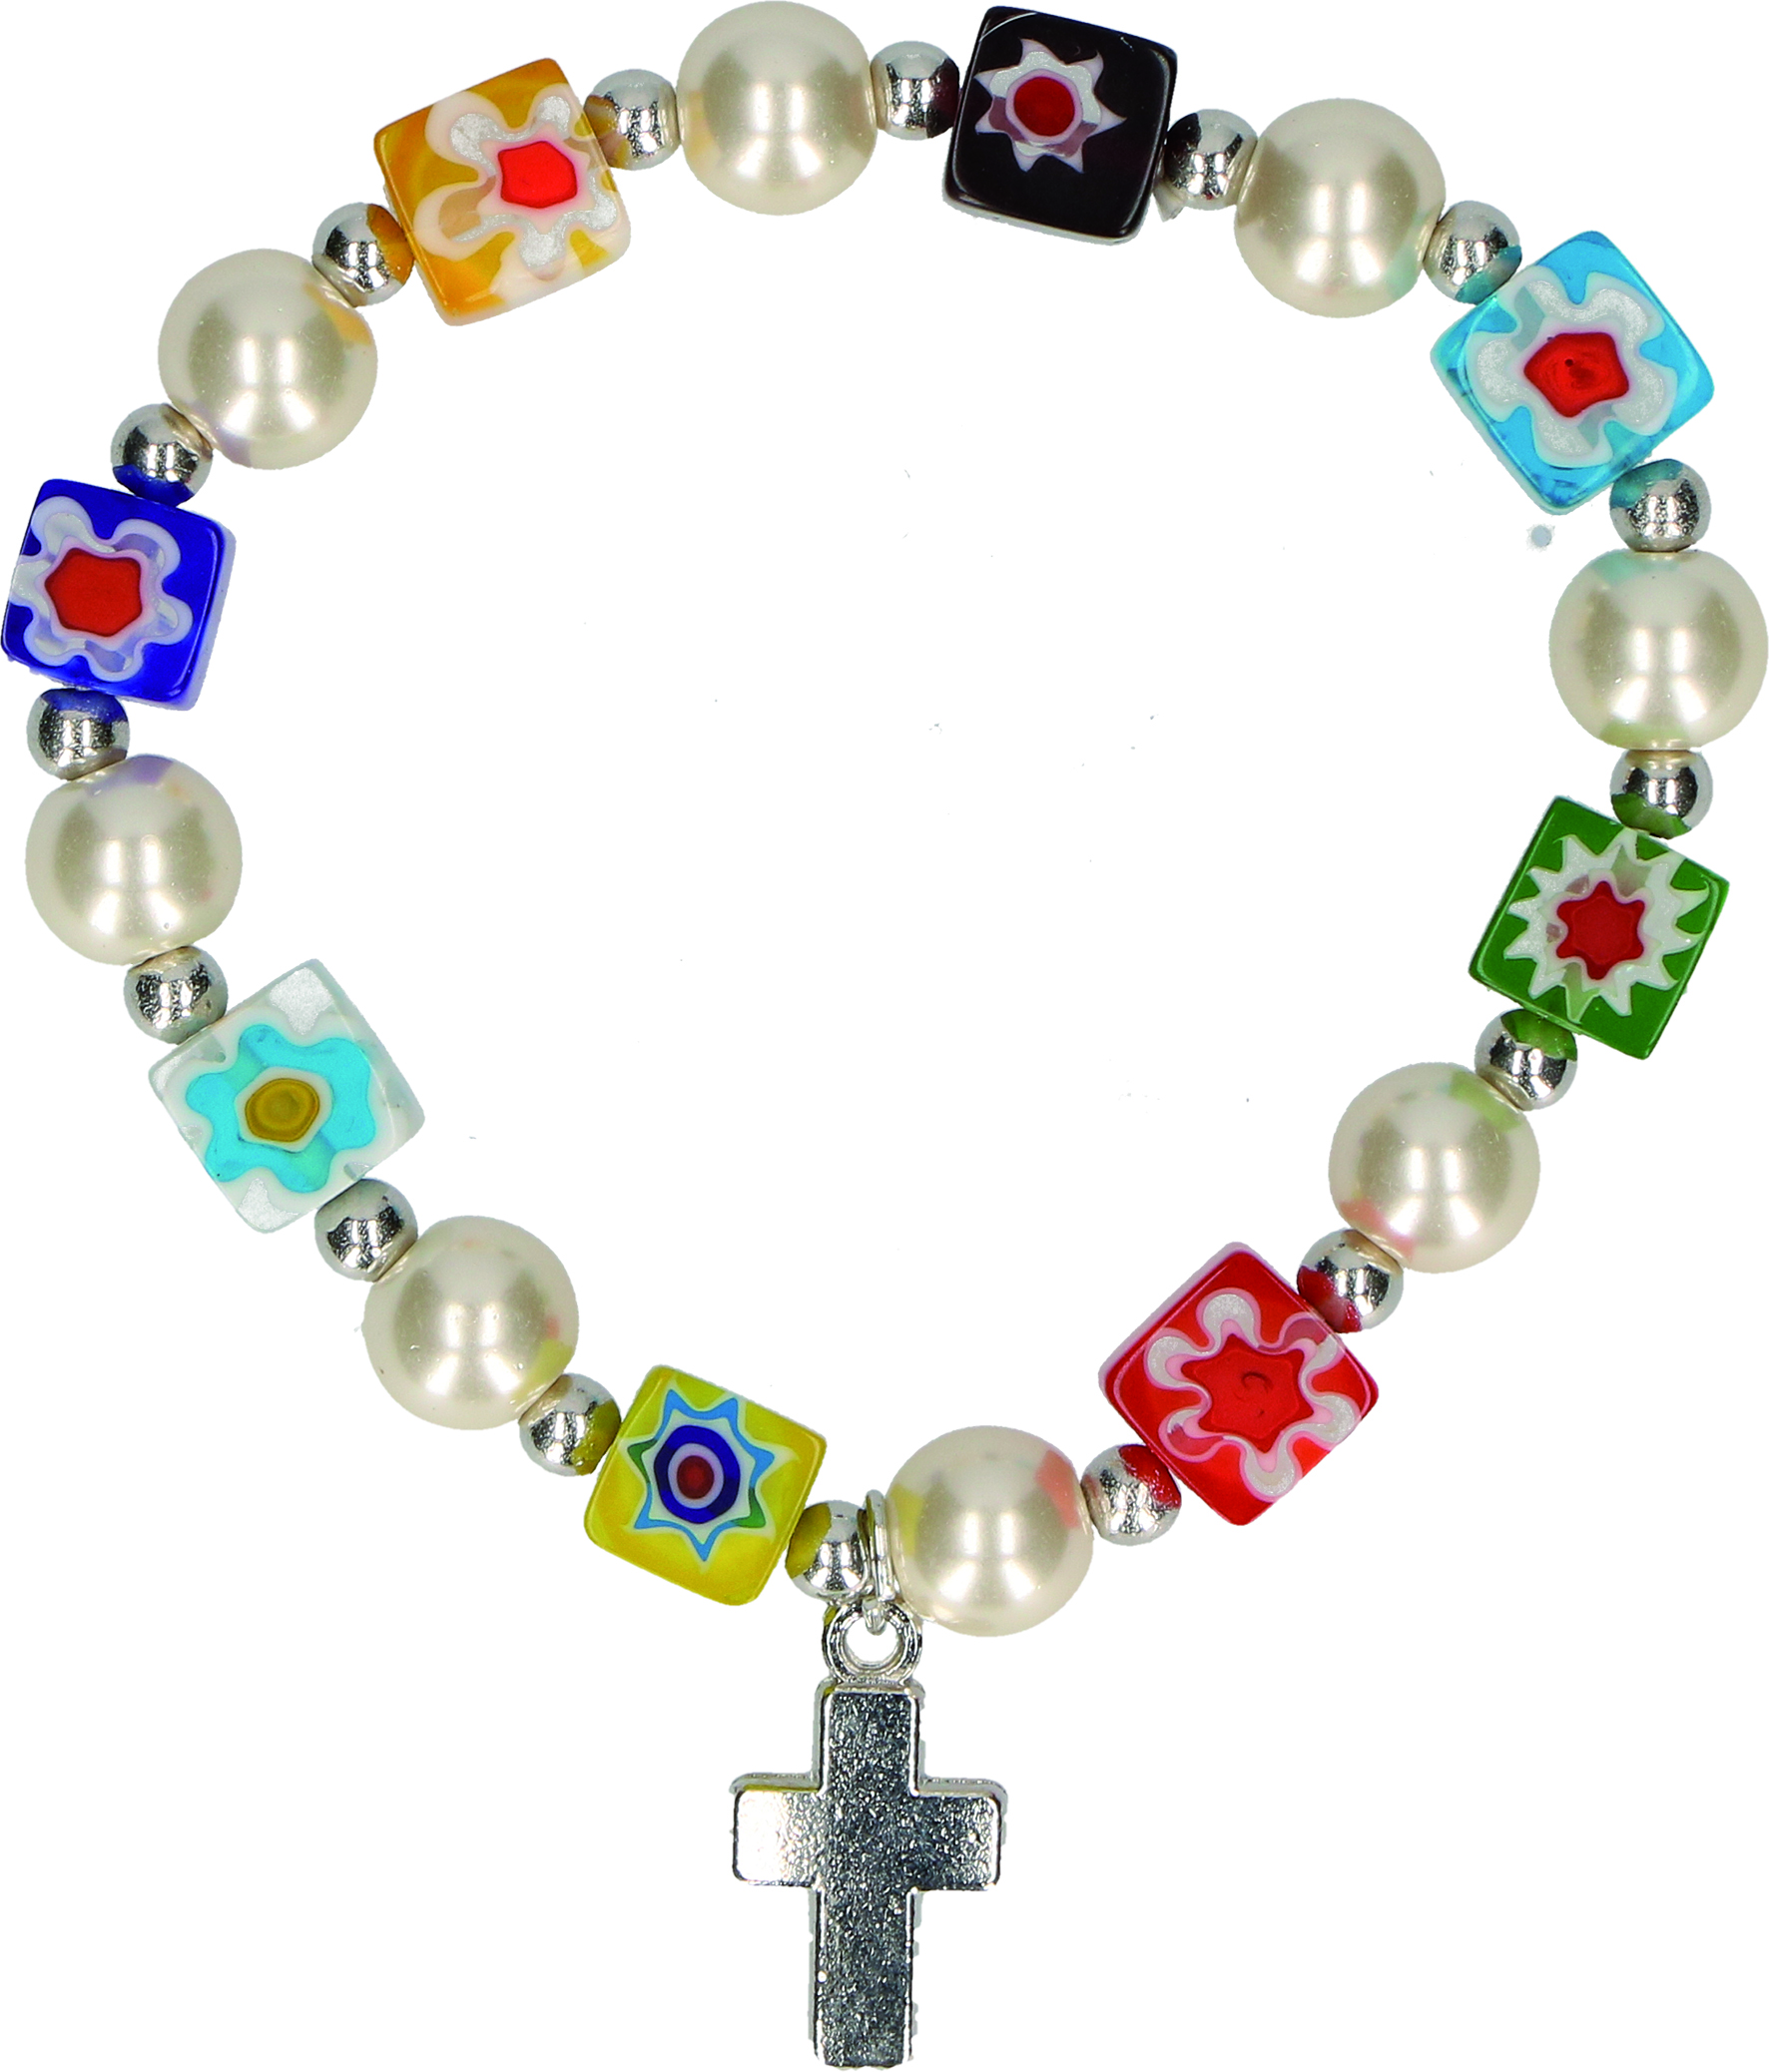 Millefiori-Armband mit würfelförmigen Perlen